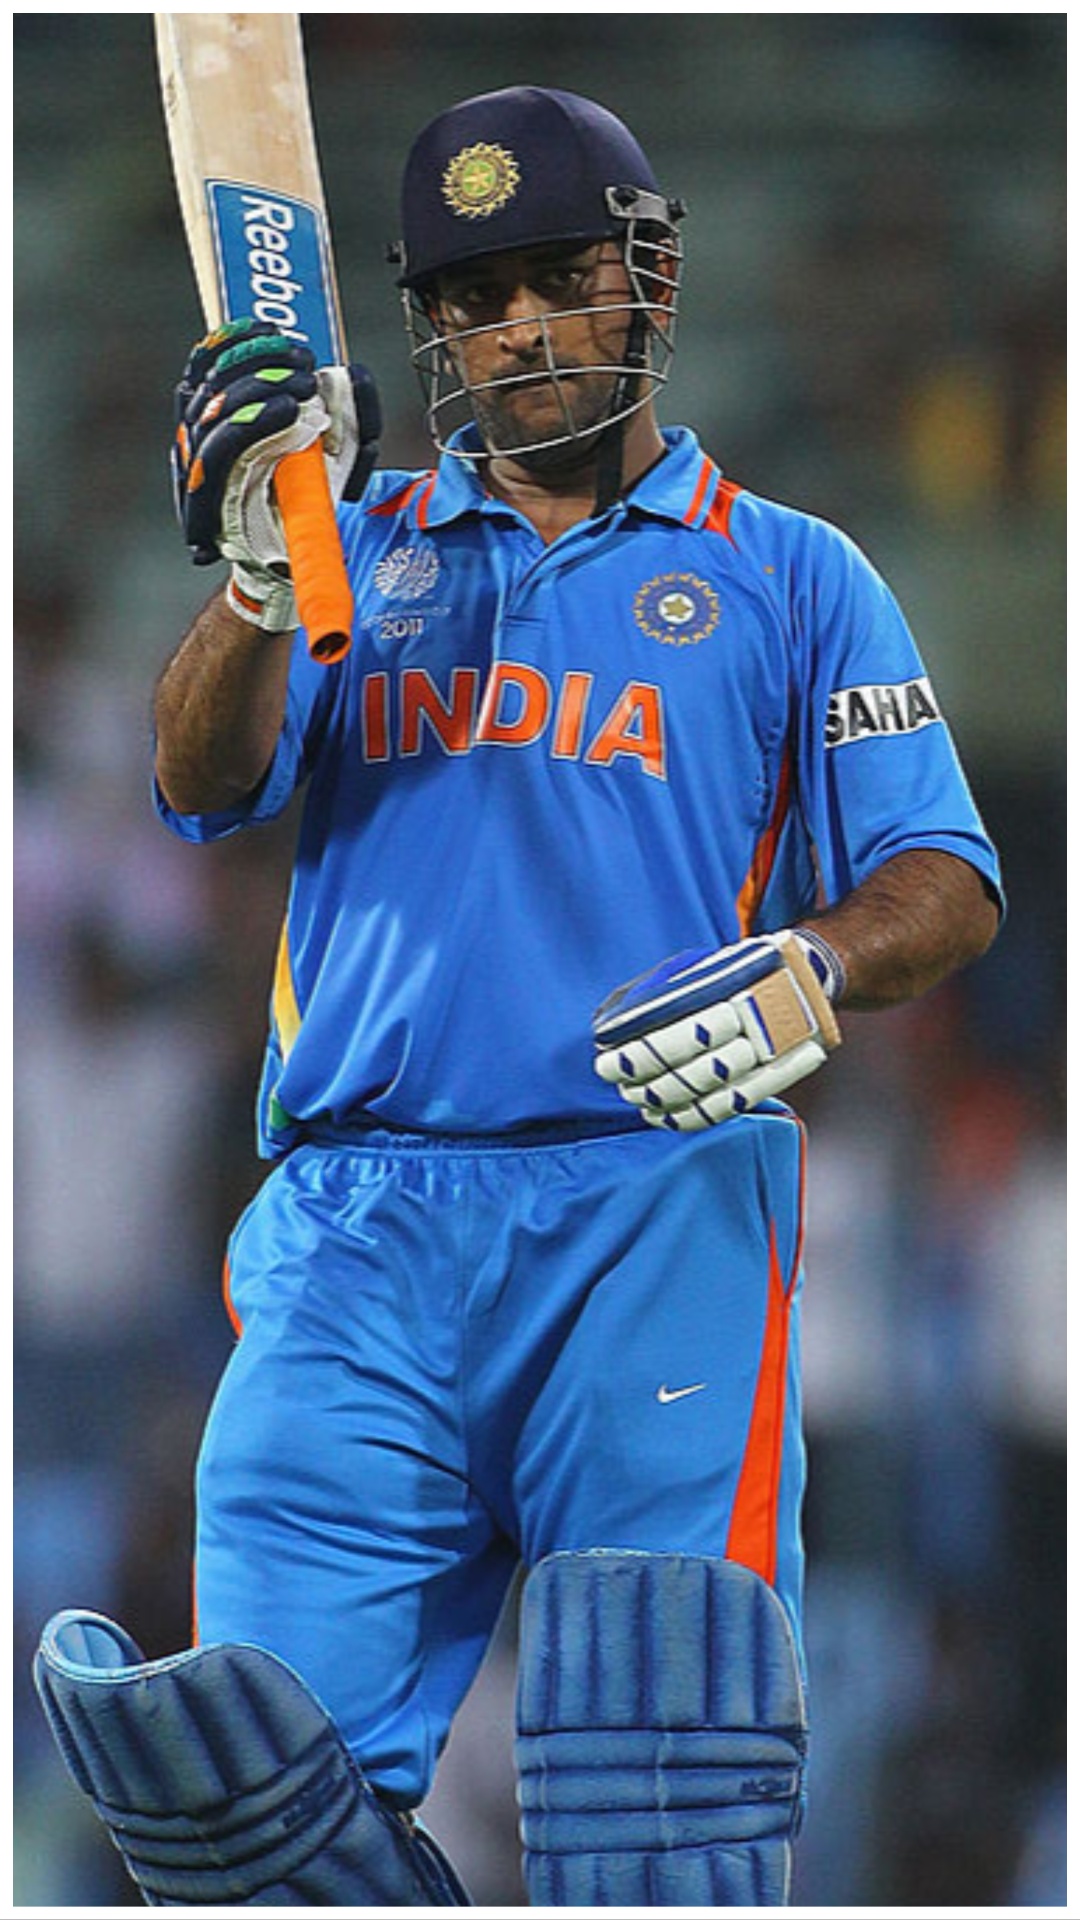 सबसे ज्यादा ODI मैच जीतने वाले कप्तान, धोनी का ये है नंबर 